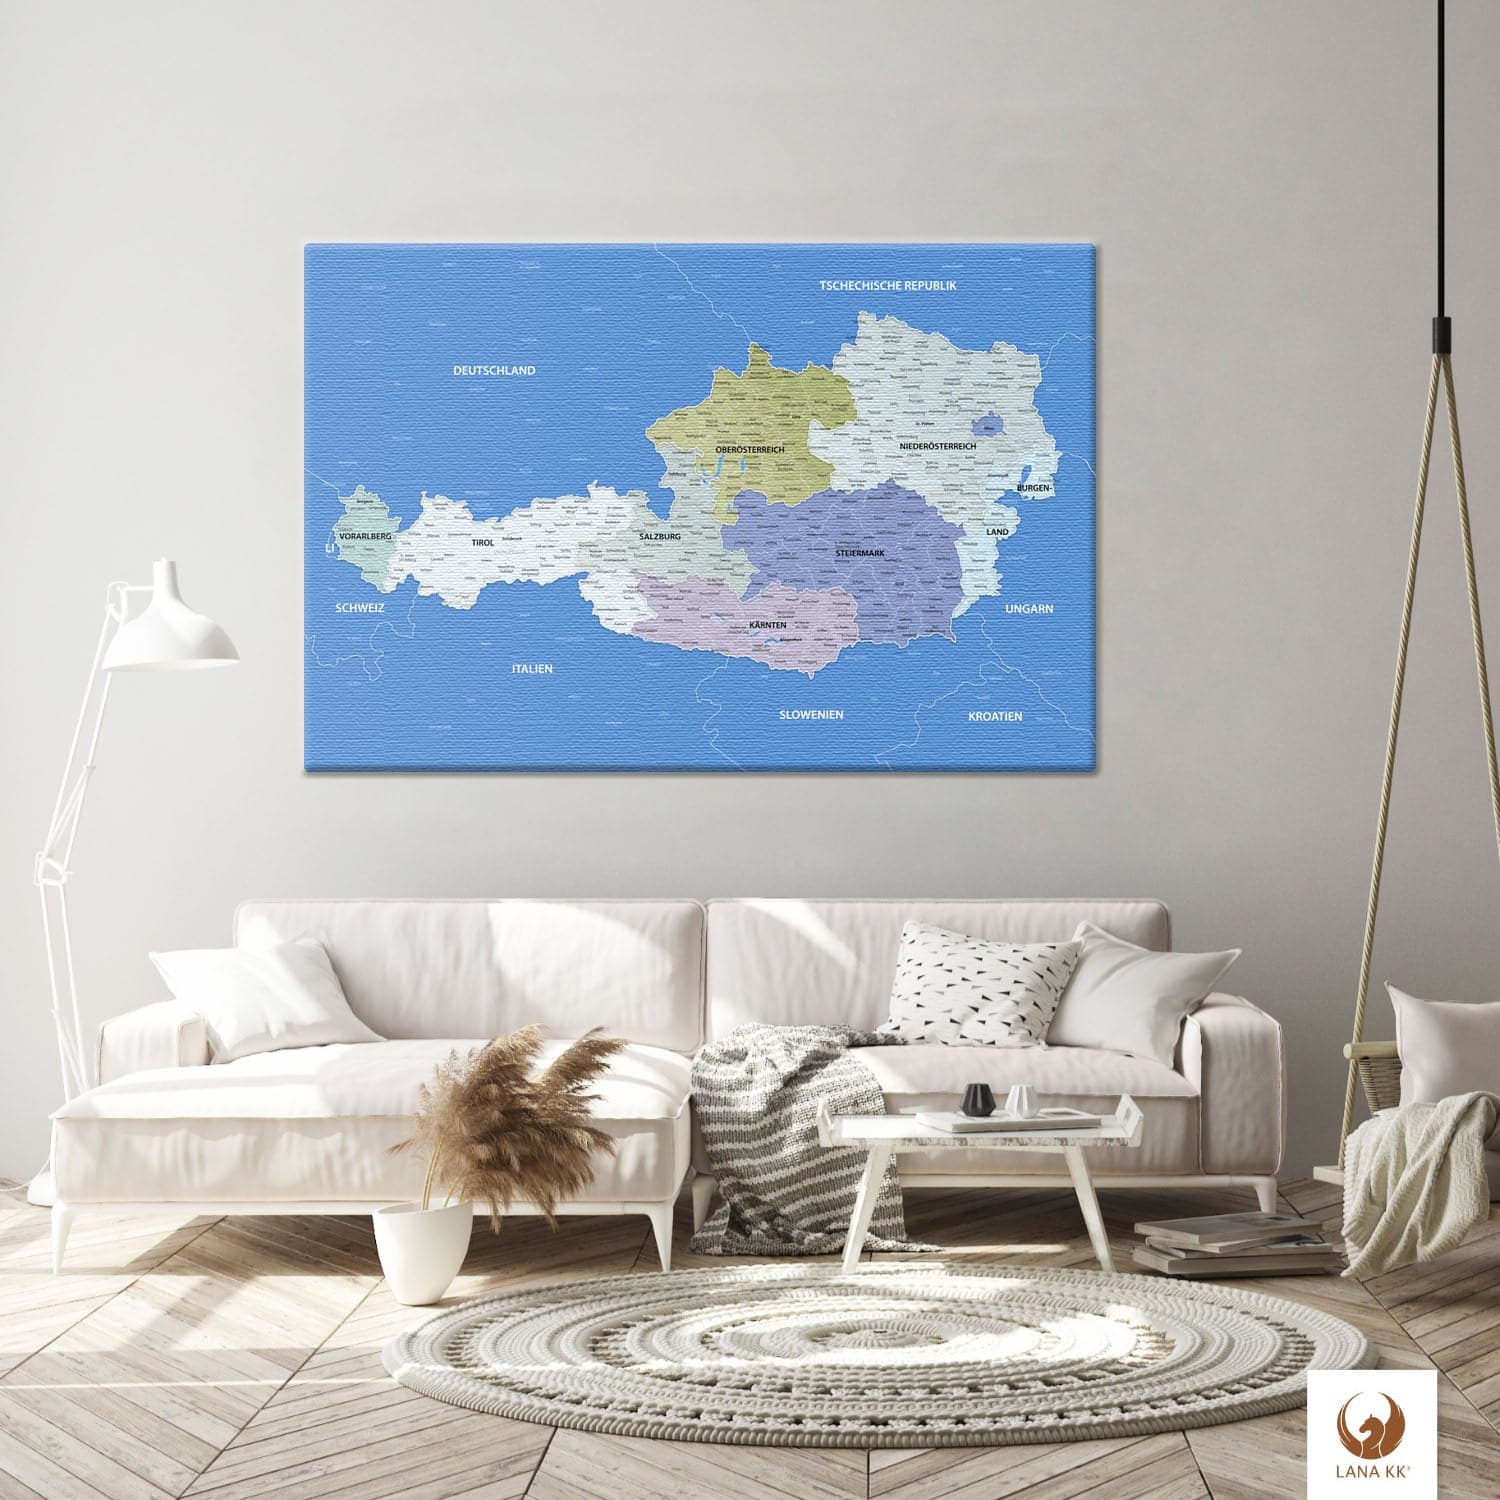 Die Welt als Zentrum Deiner Wohnung. Deine Österreichkarte Hellblau für sich mit ihren ausgewogenen Farben ideal in Dein Wohnkonzept ein.